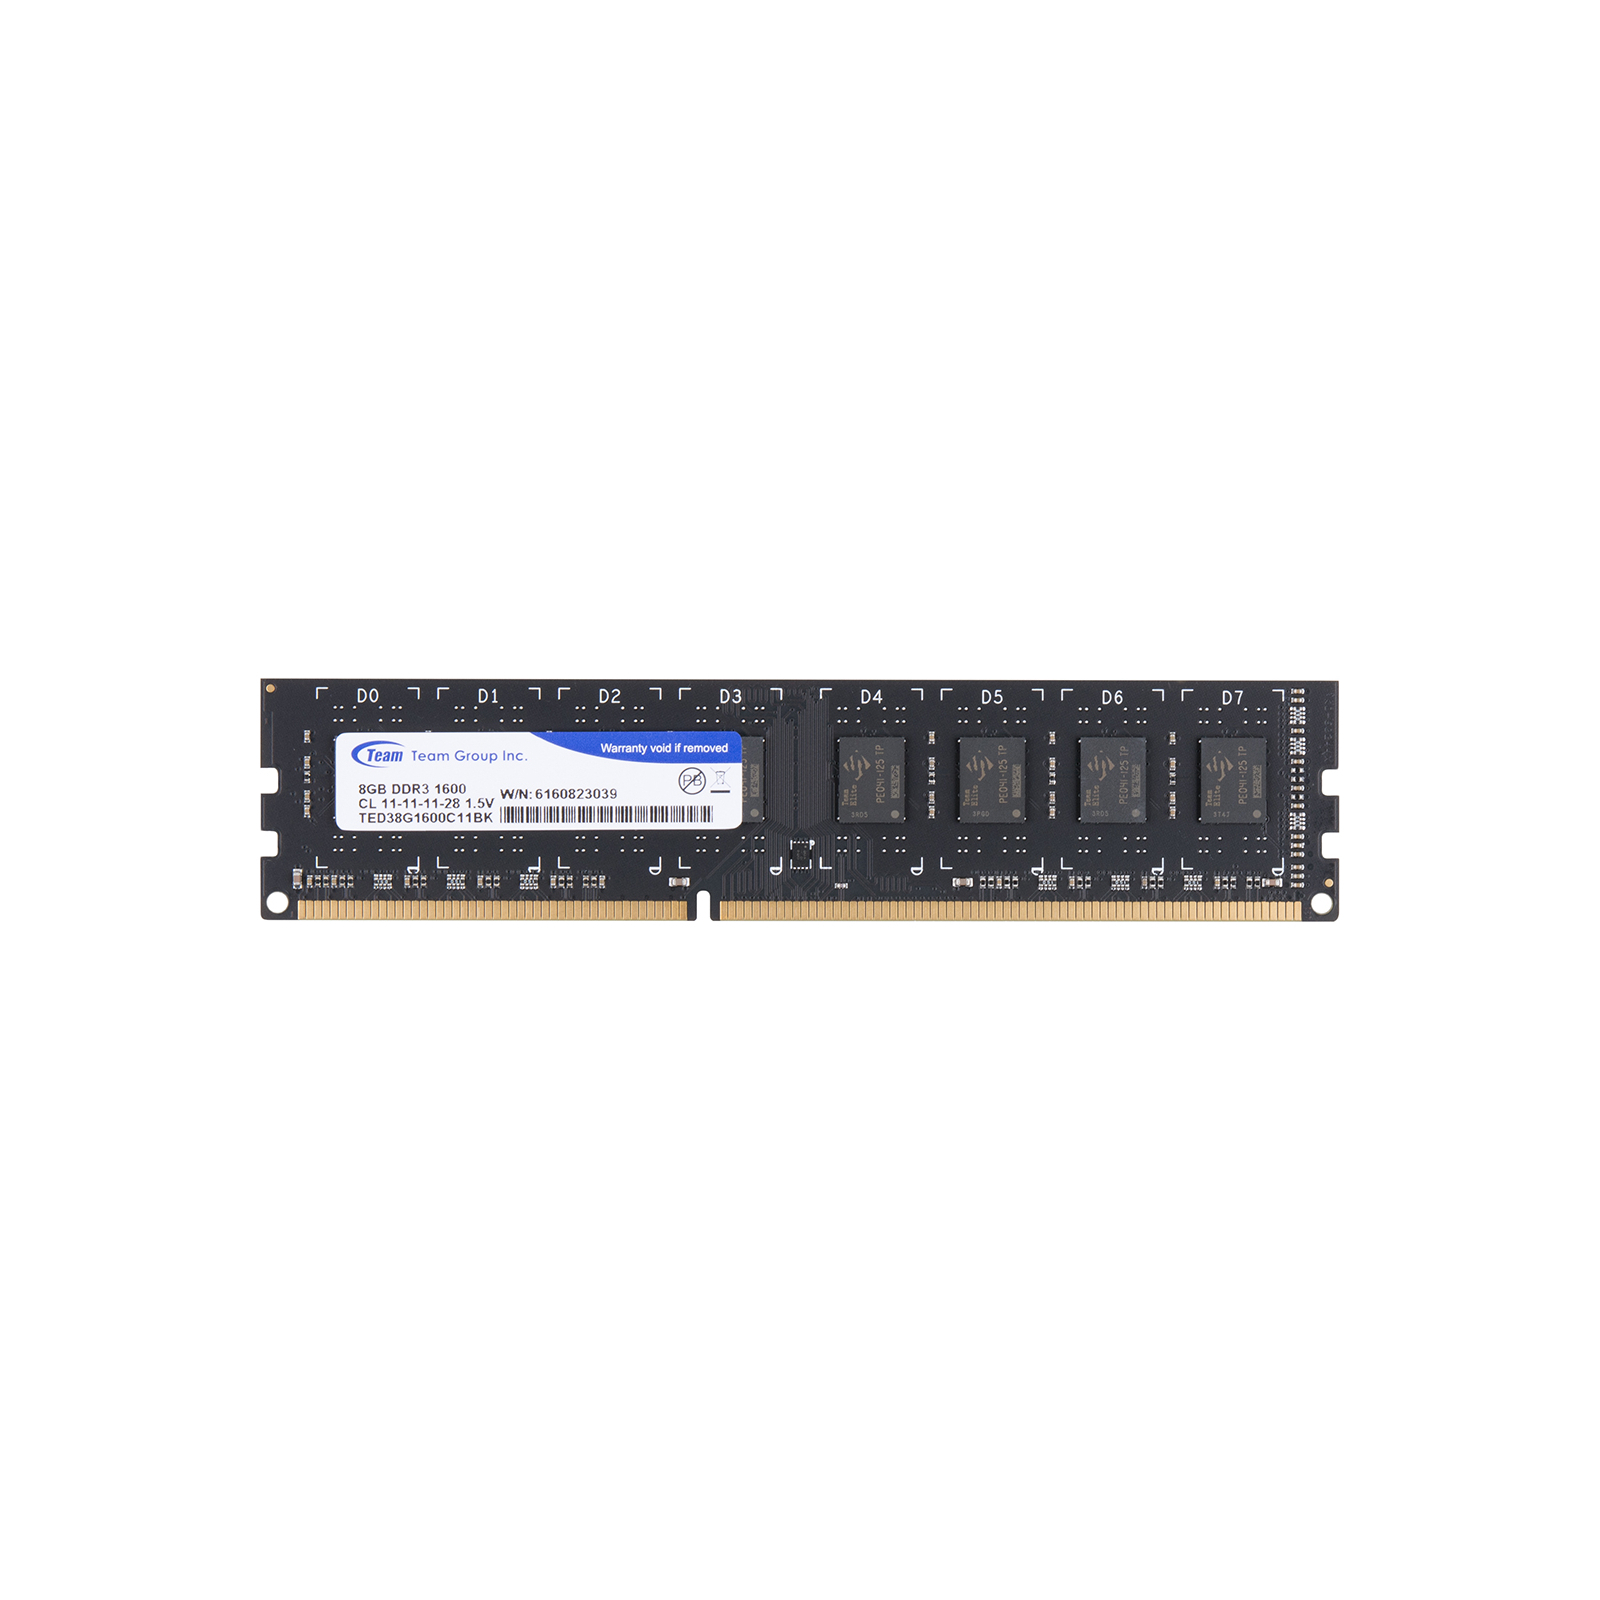 Модуль памяти для компьютера DDR3 2GB 1600 MHz Team (TED32G1600C1101)